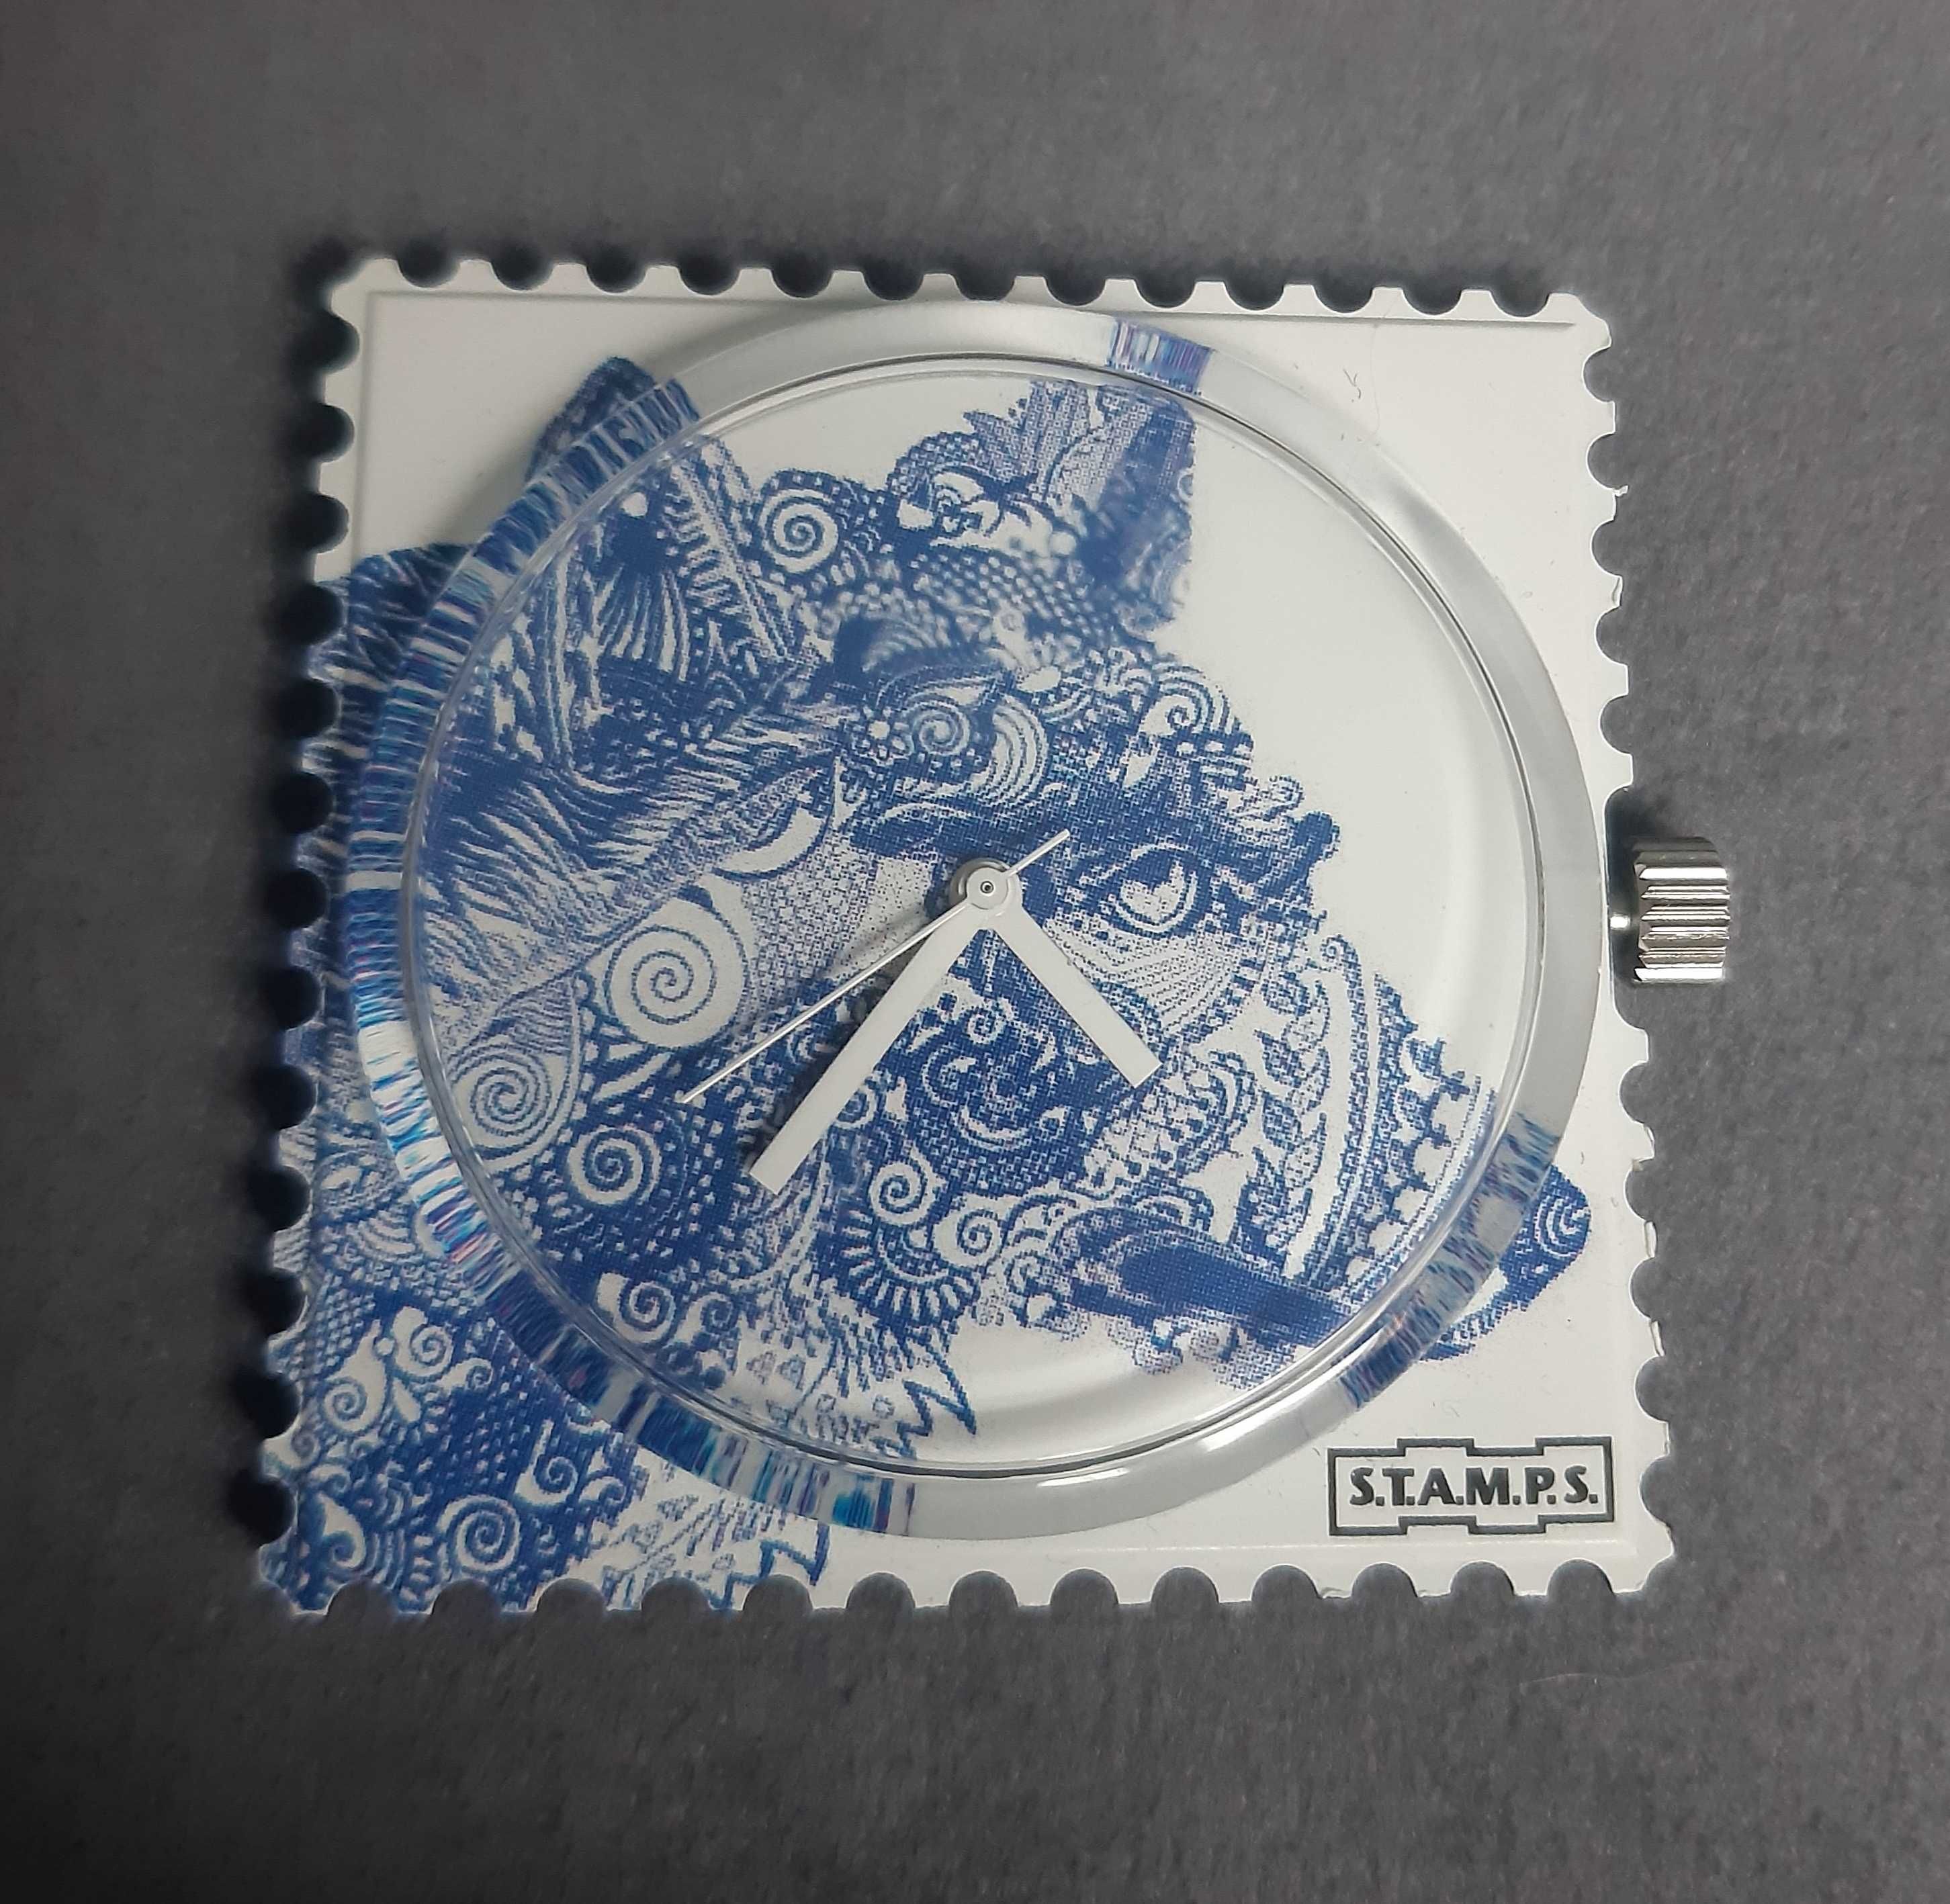 Zegarek Stamps unikat